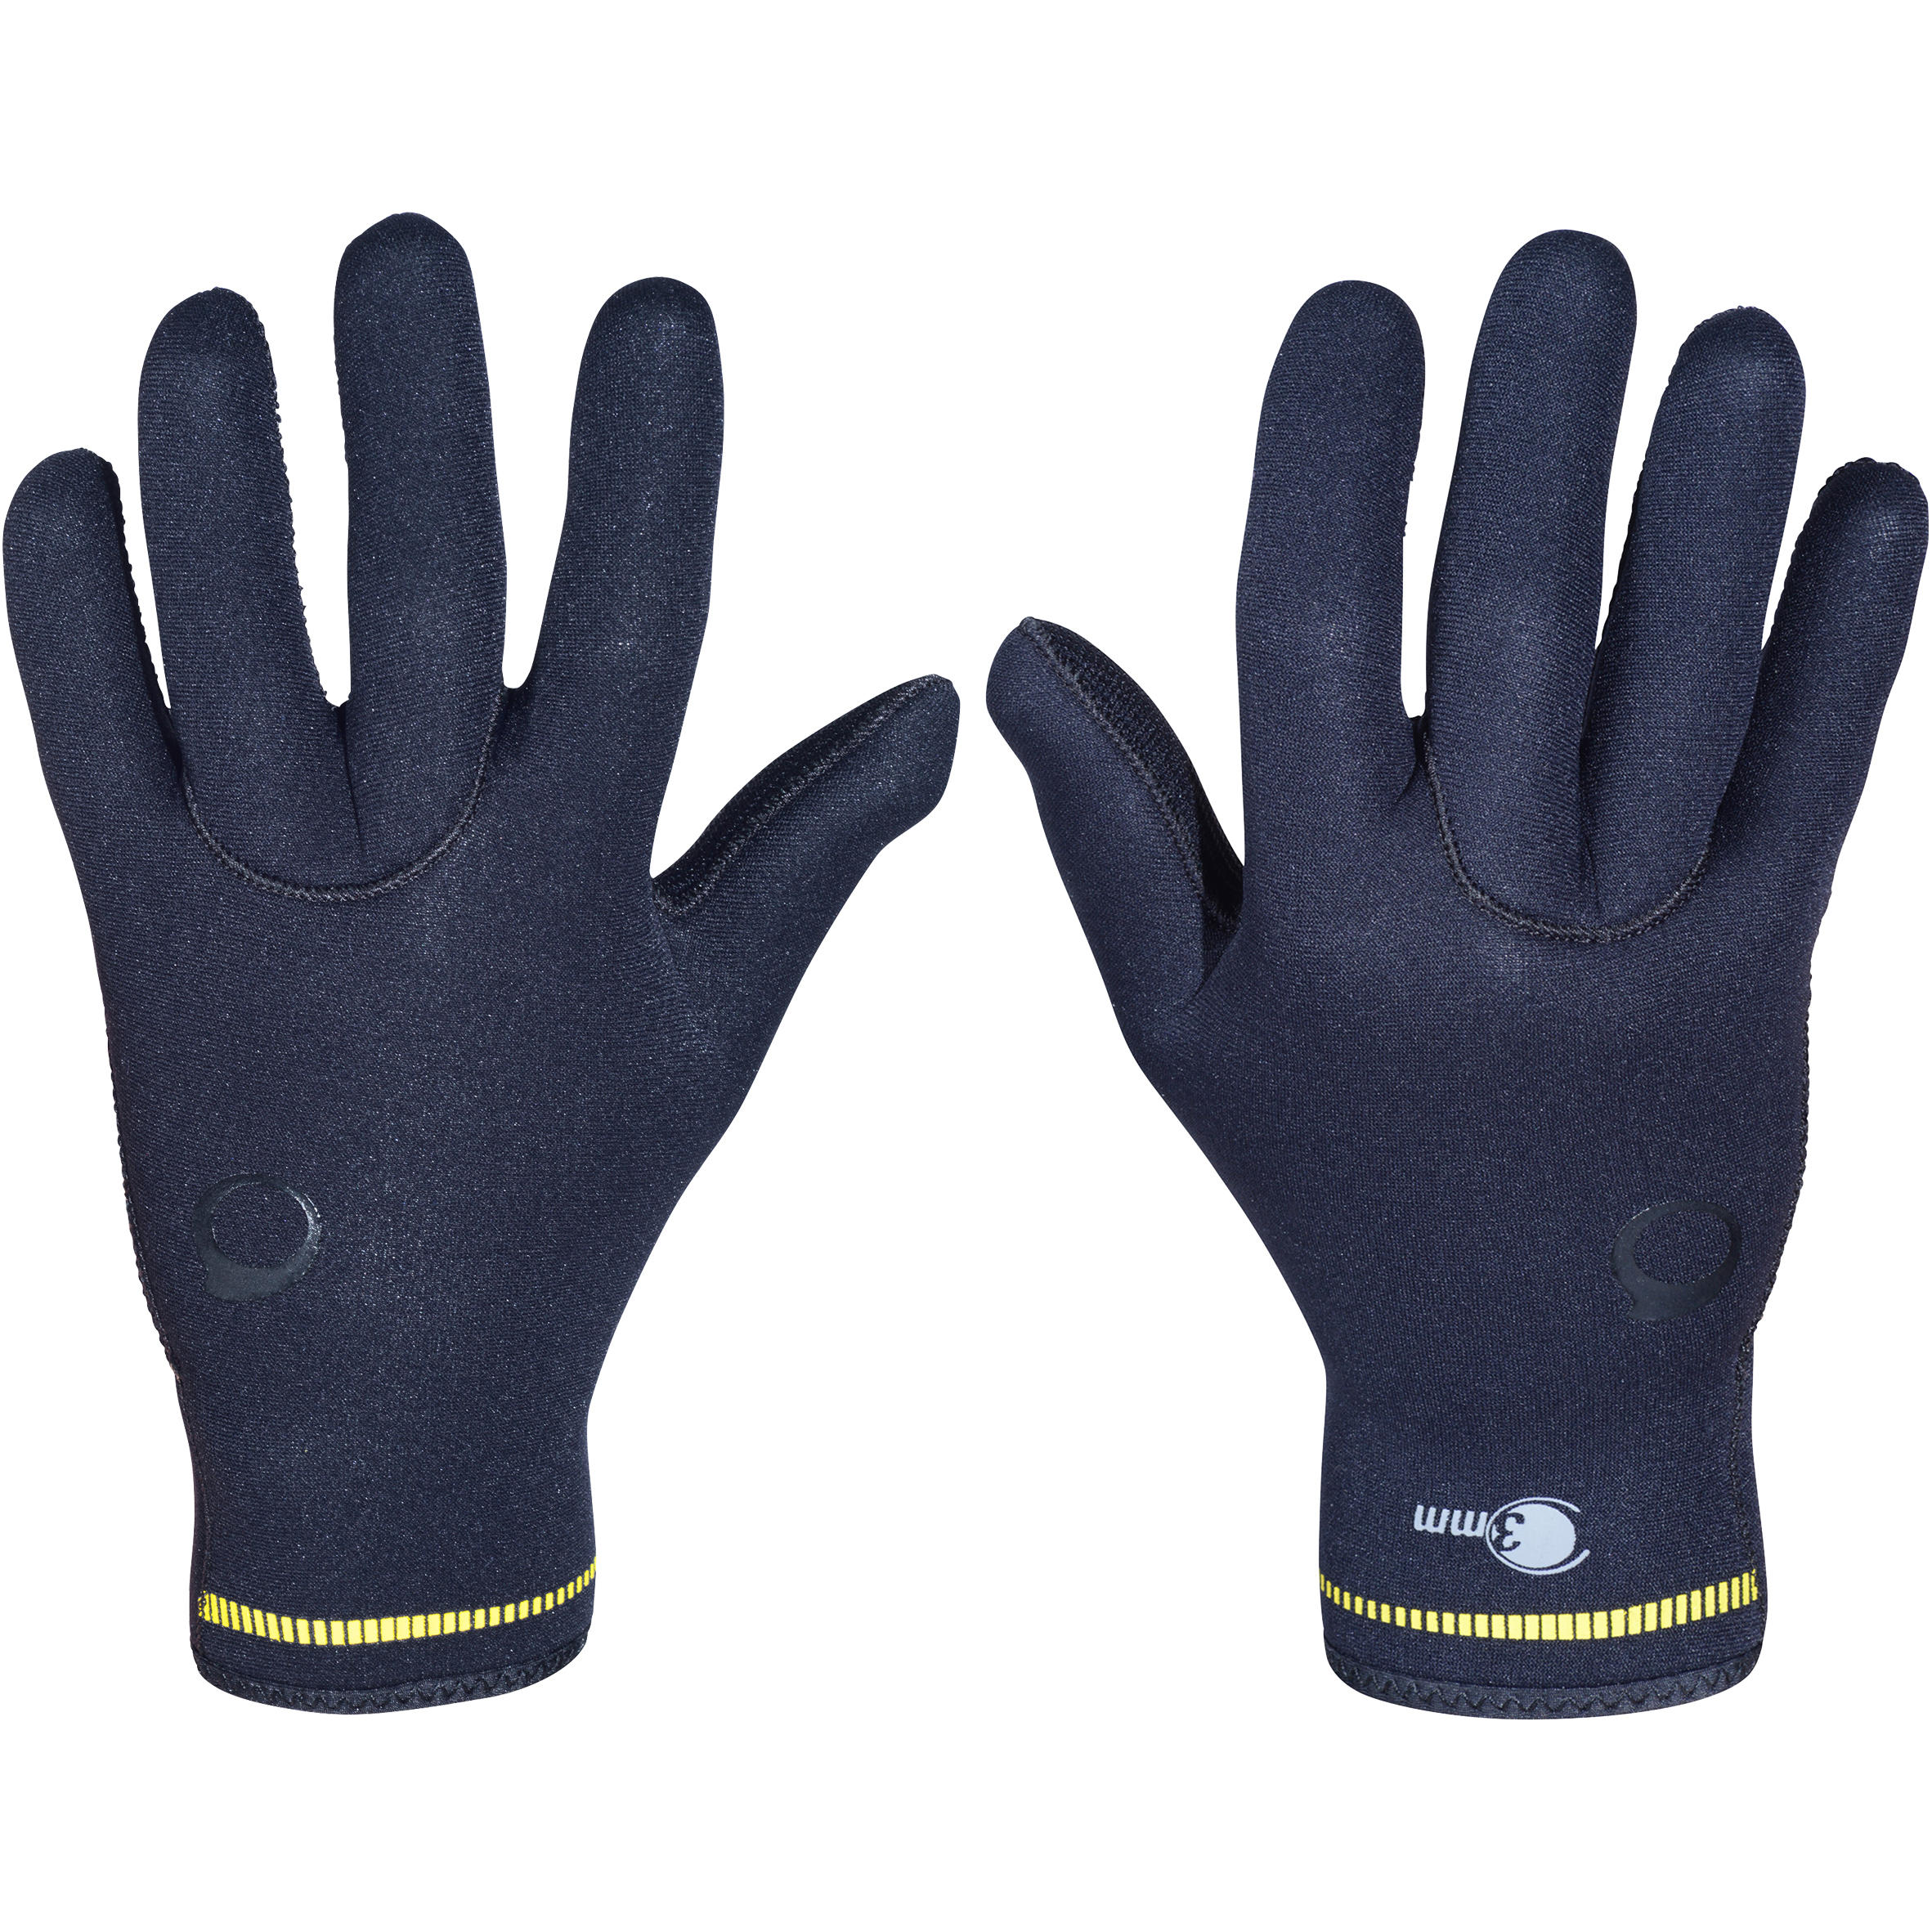 Diving gloves 3 mm neoprene black 3/9